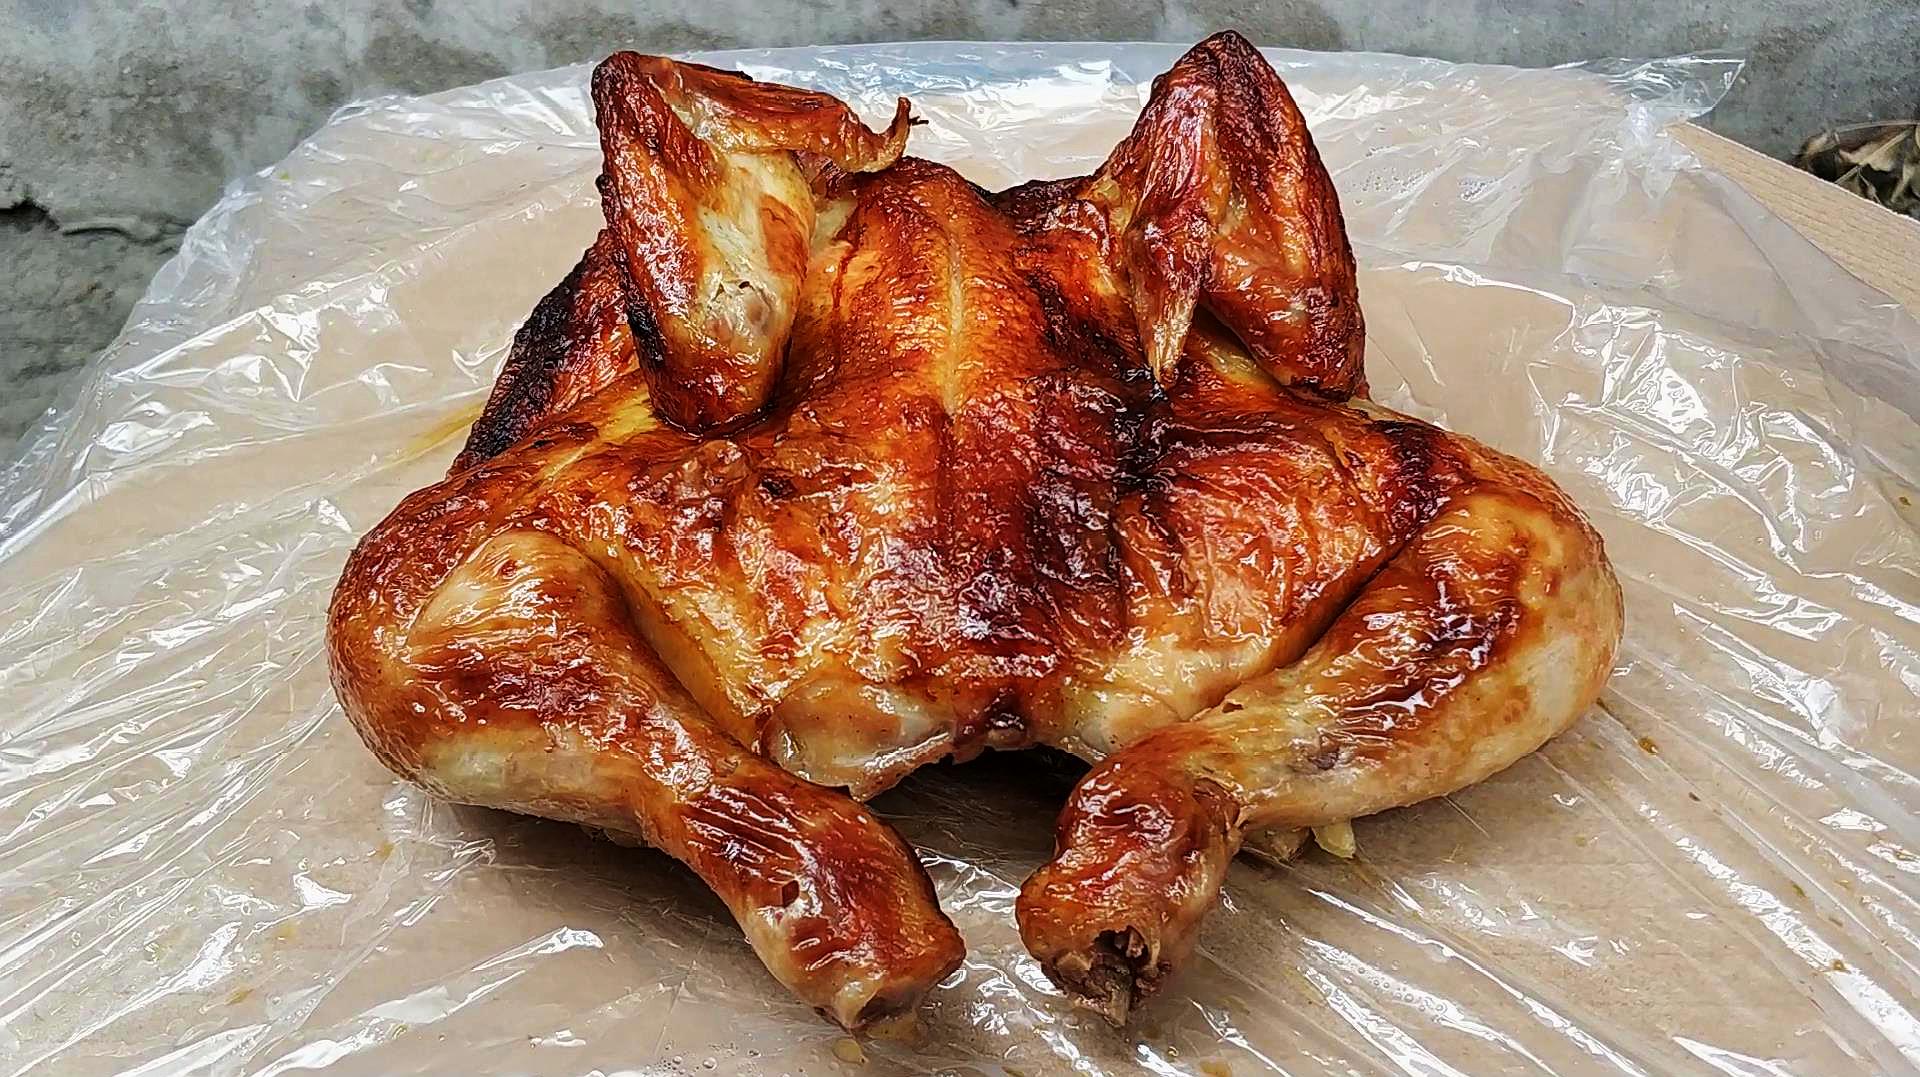 天津街头火爆20多年的烤香鸡,26.8元一斤,整只撕着吃实在太爽了